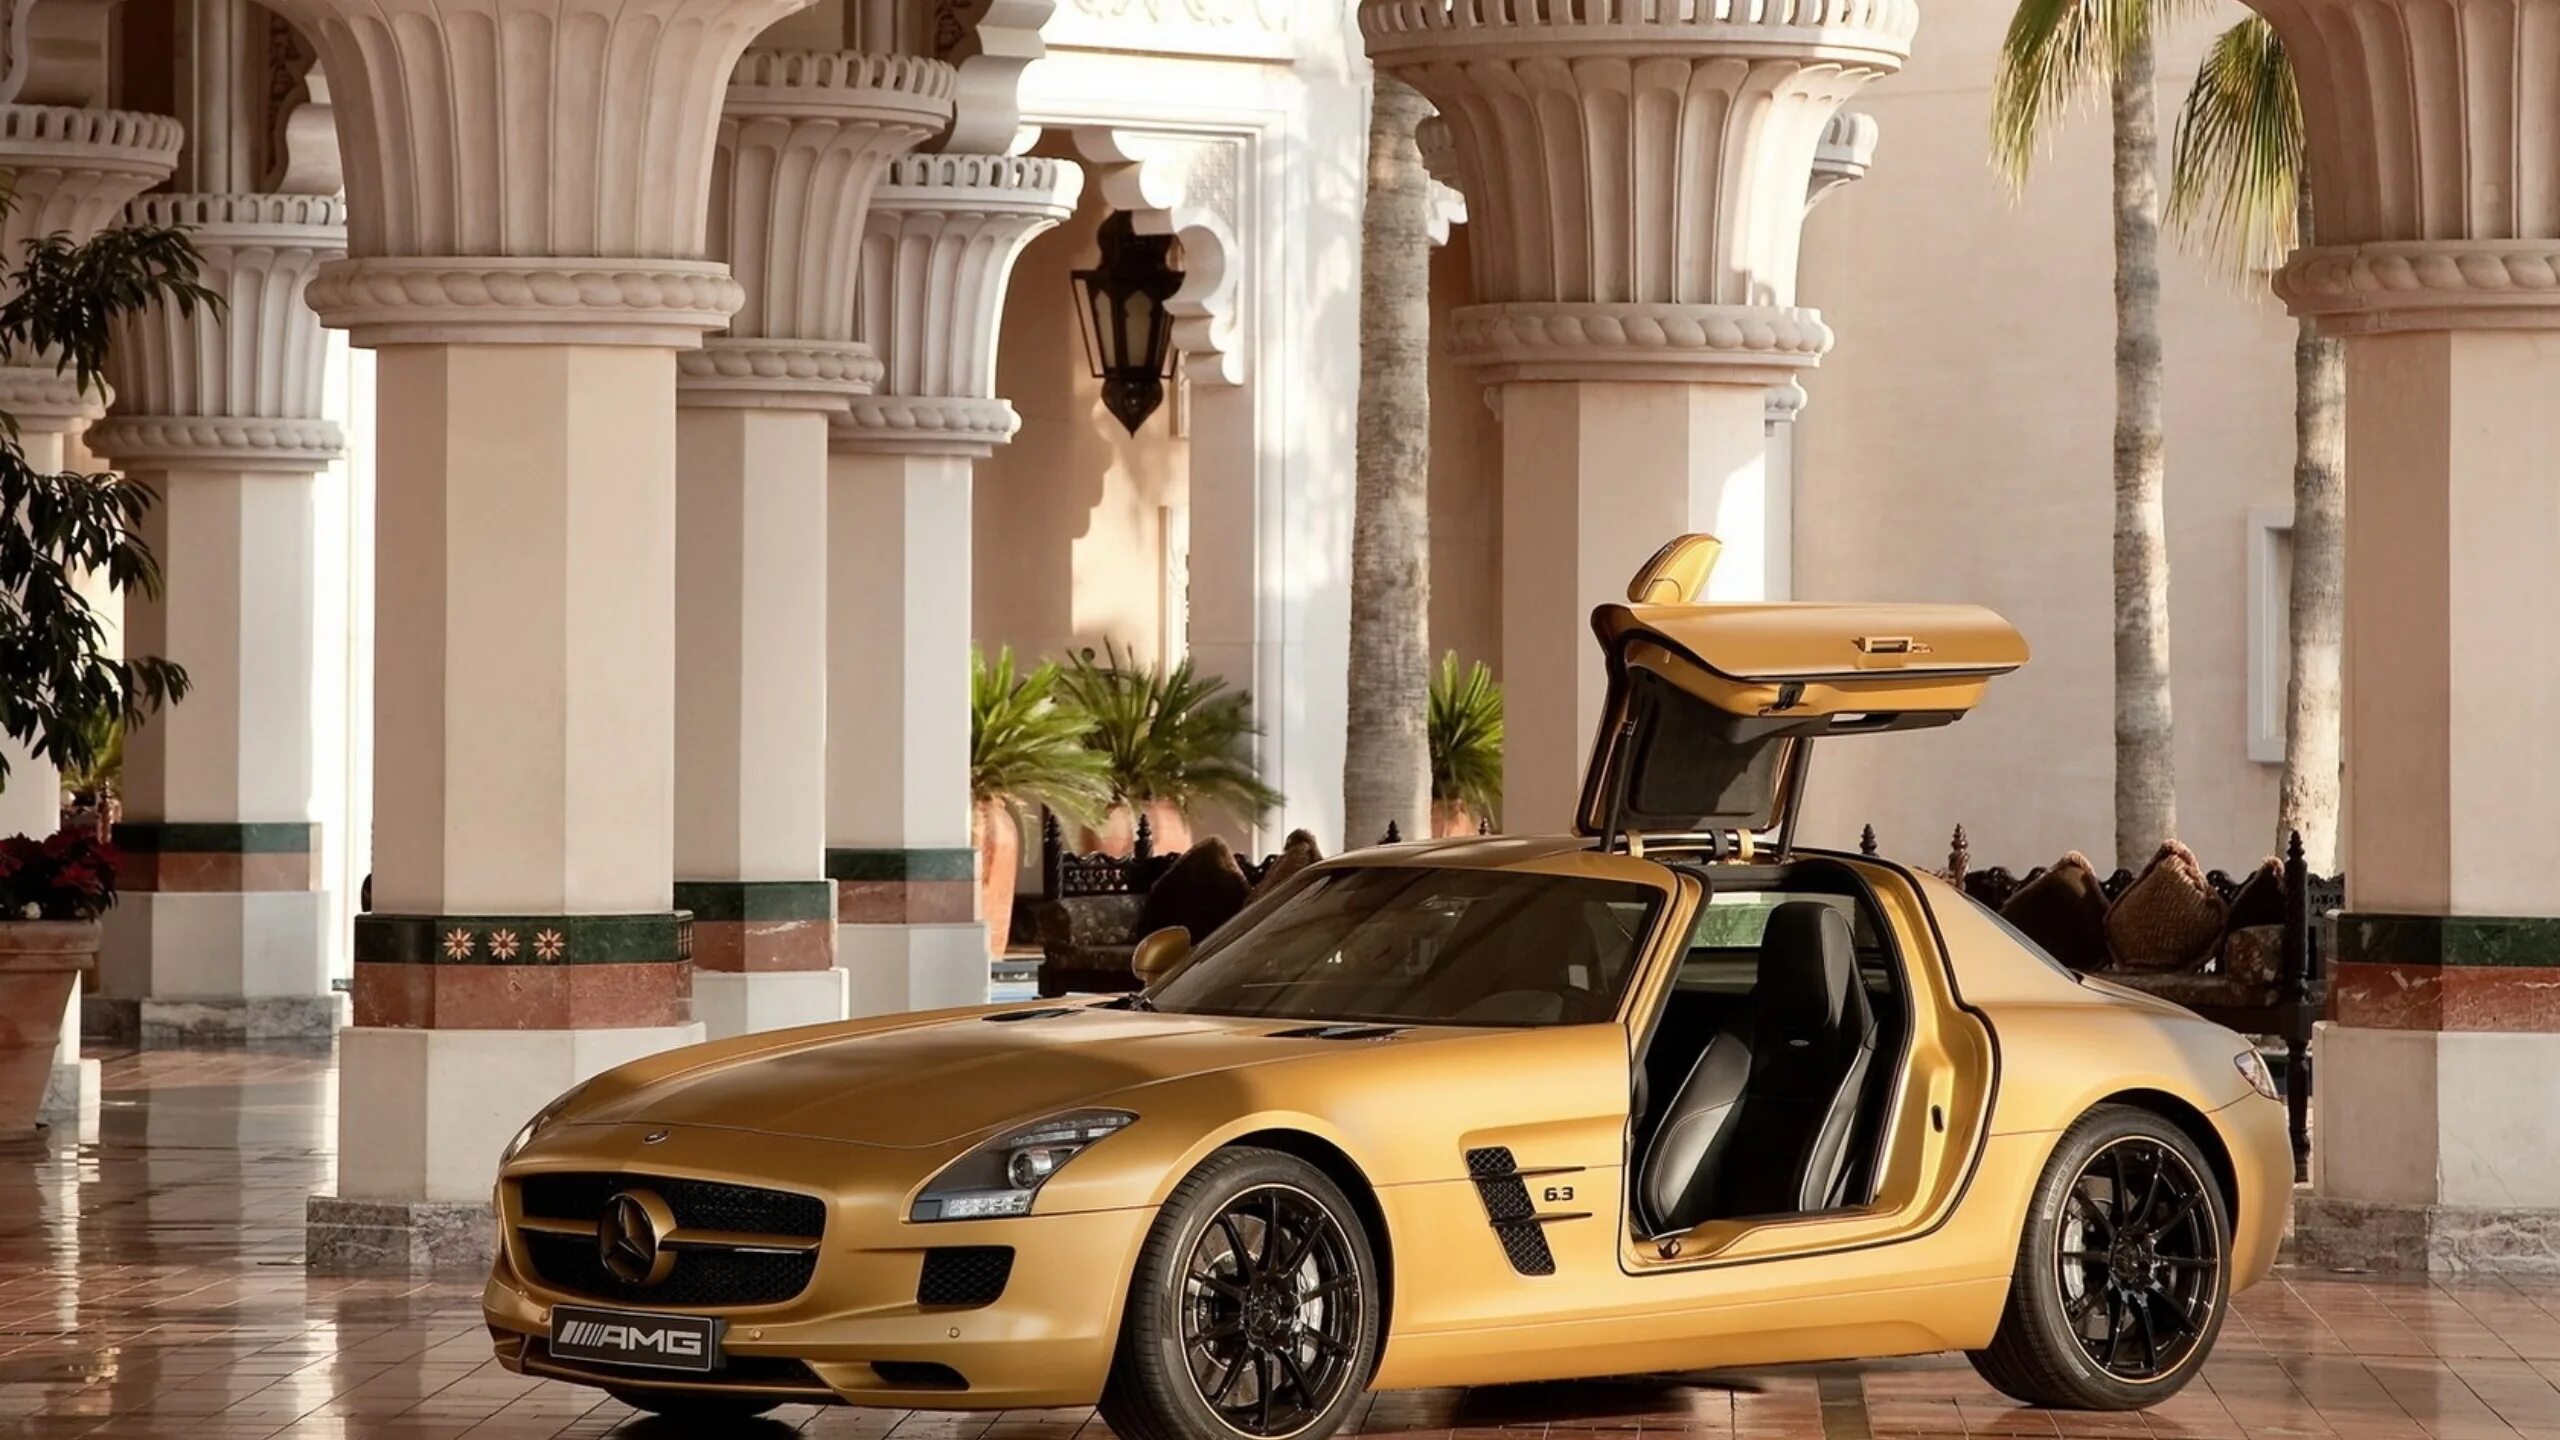 Мерседес СЛС АМГ золотой. Мерседес Бенц СЛС АМГ В Дубае. 2010 Mercedes Benz SLS AMG Desert. Mercedes AMG SLS Desert Gold. Открытый мир с автомобилями